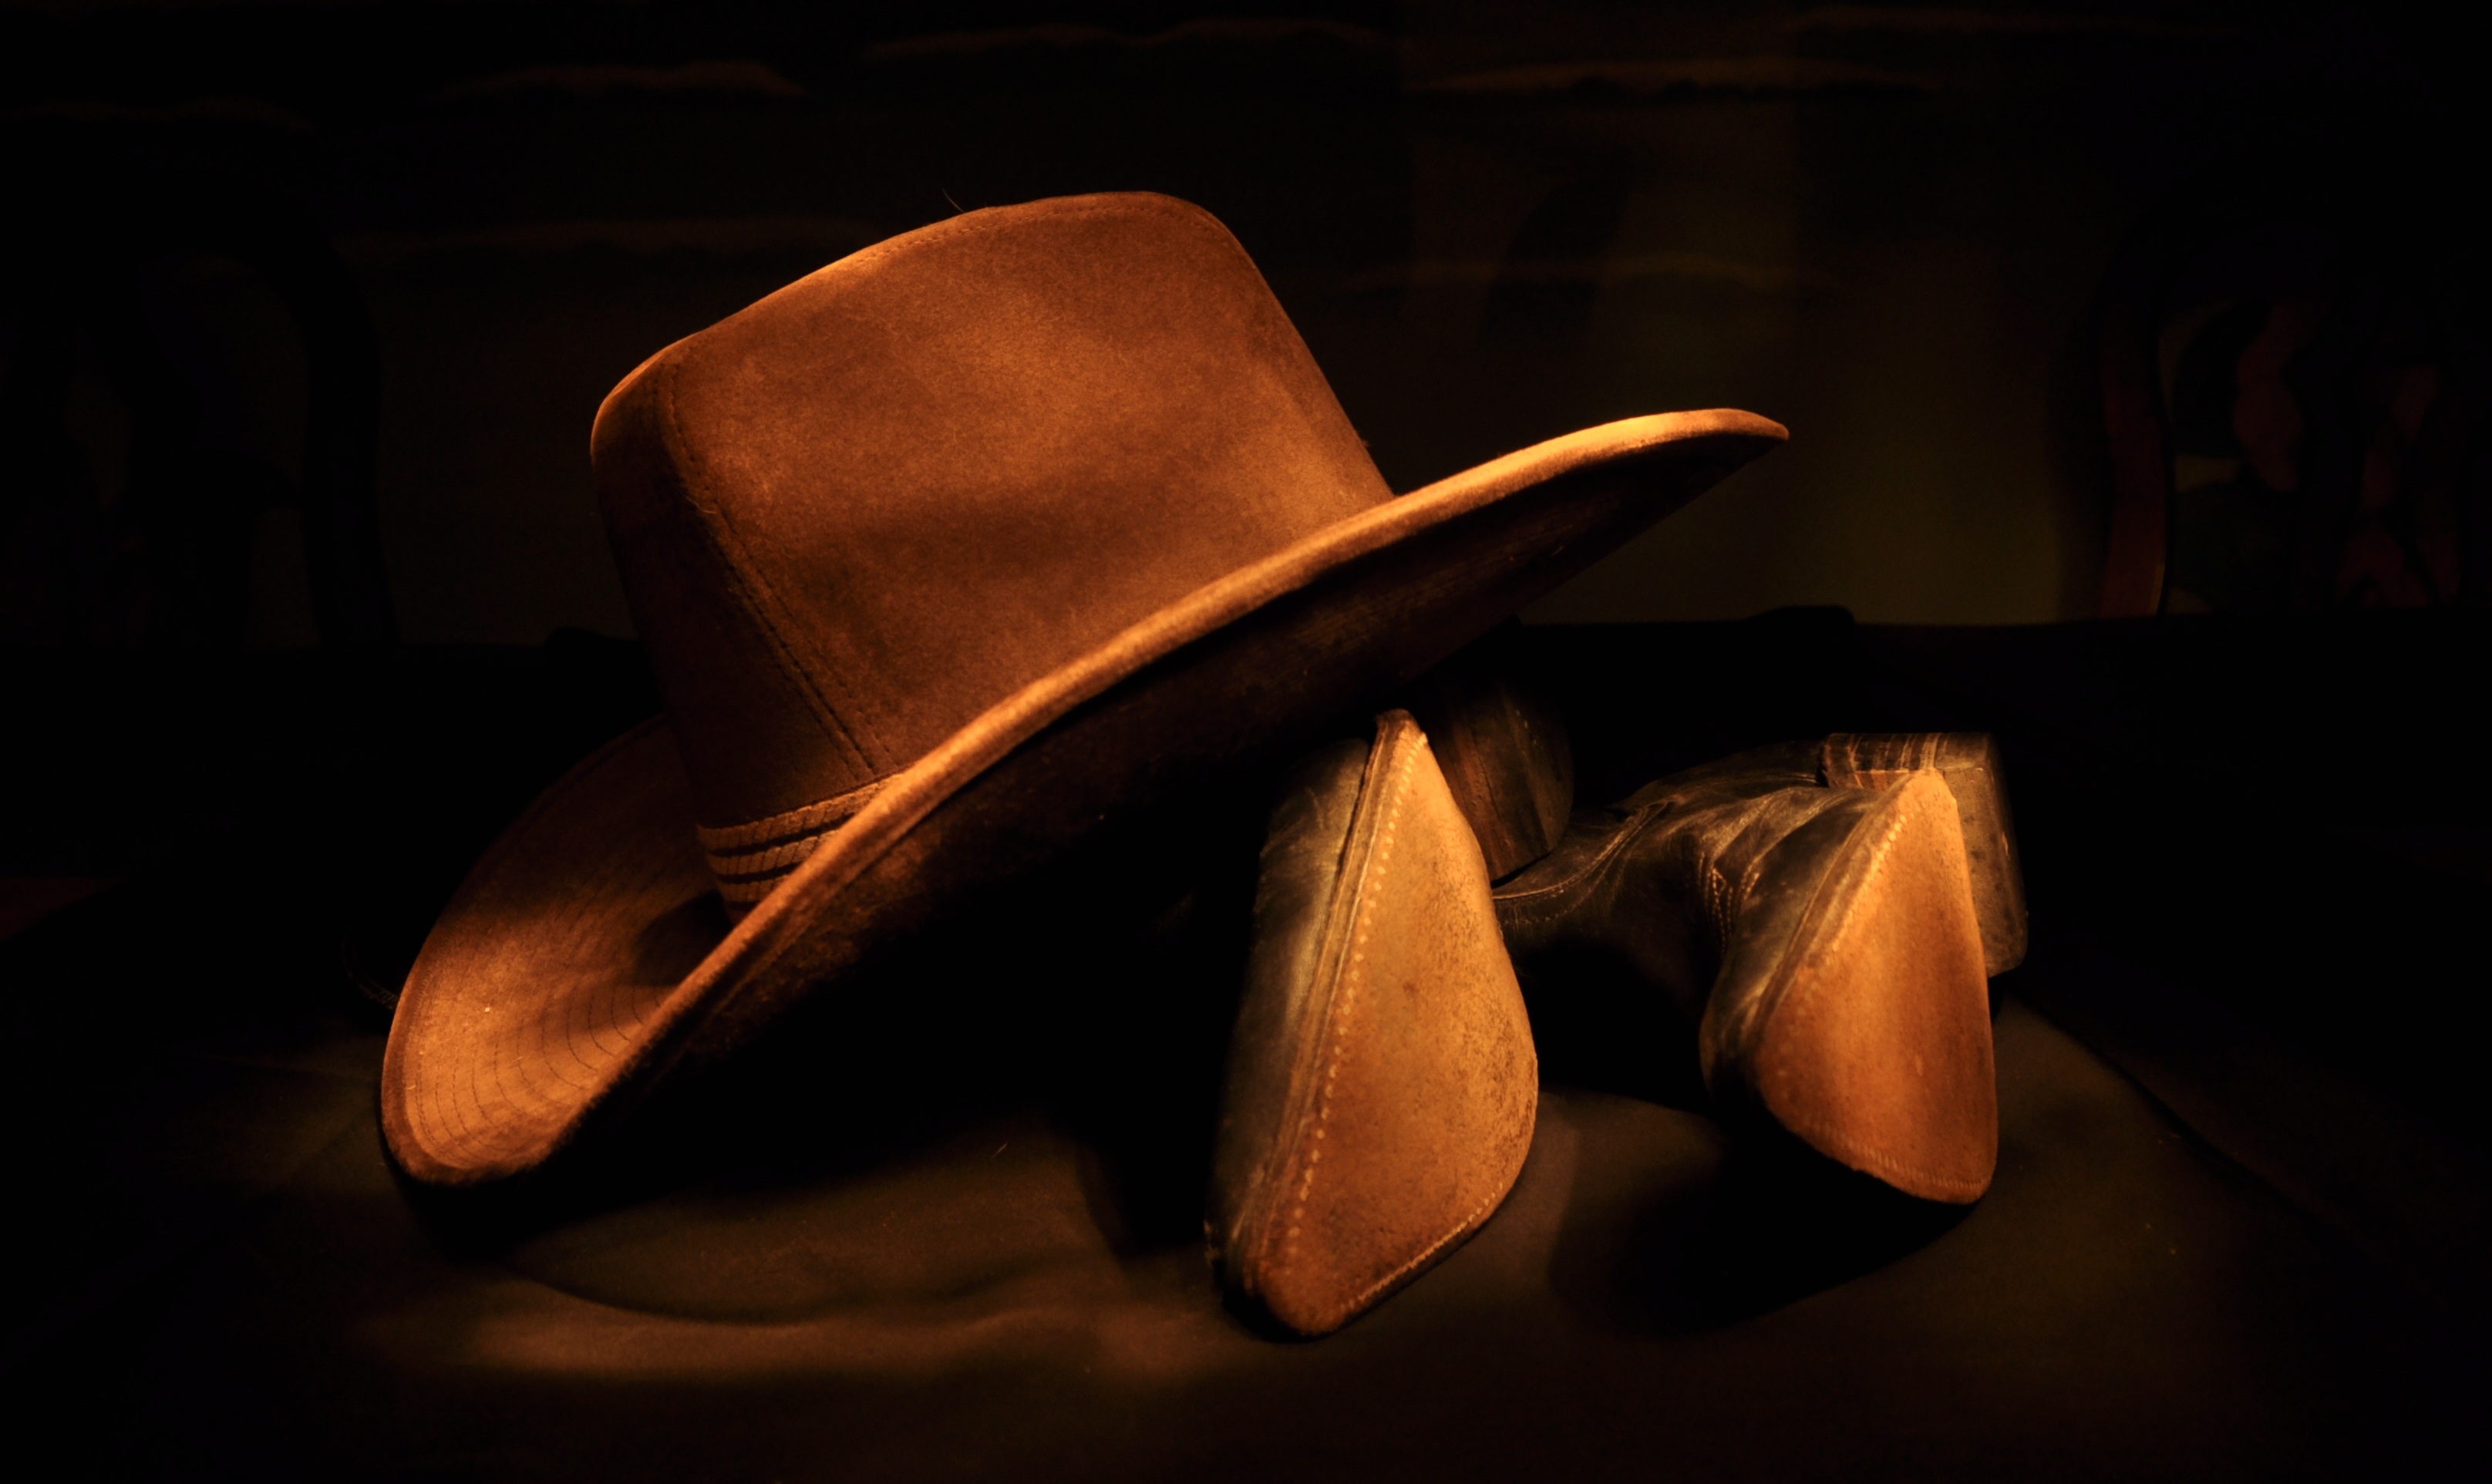 Hat Boots Cowboy Man Made Still Life 3232x1925